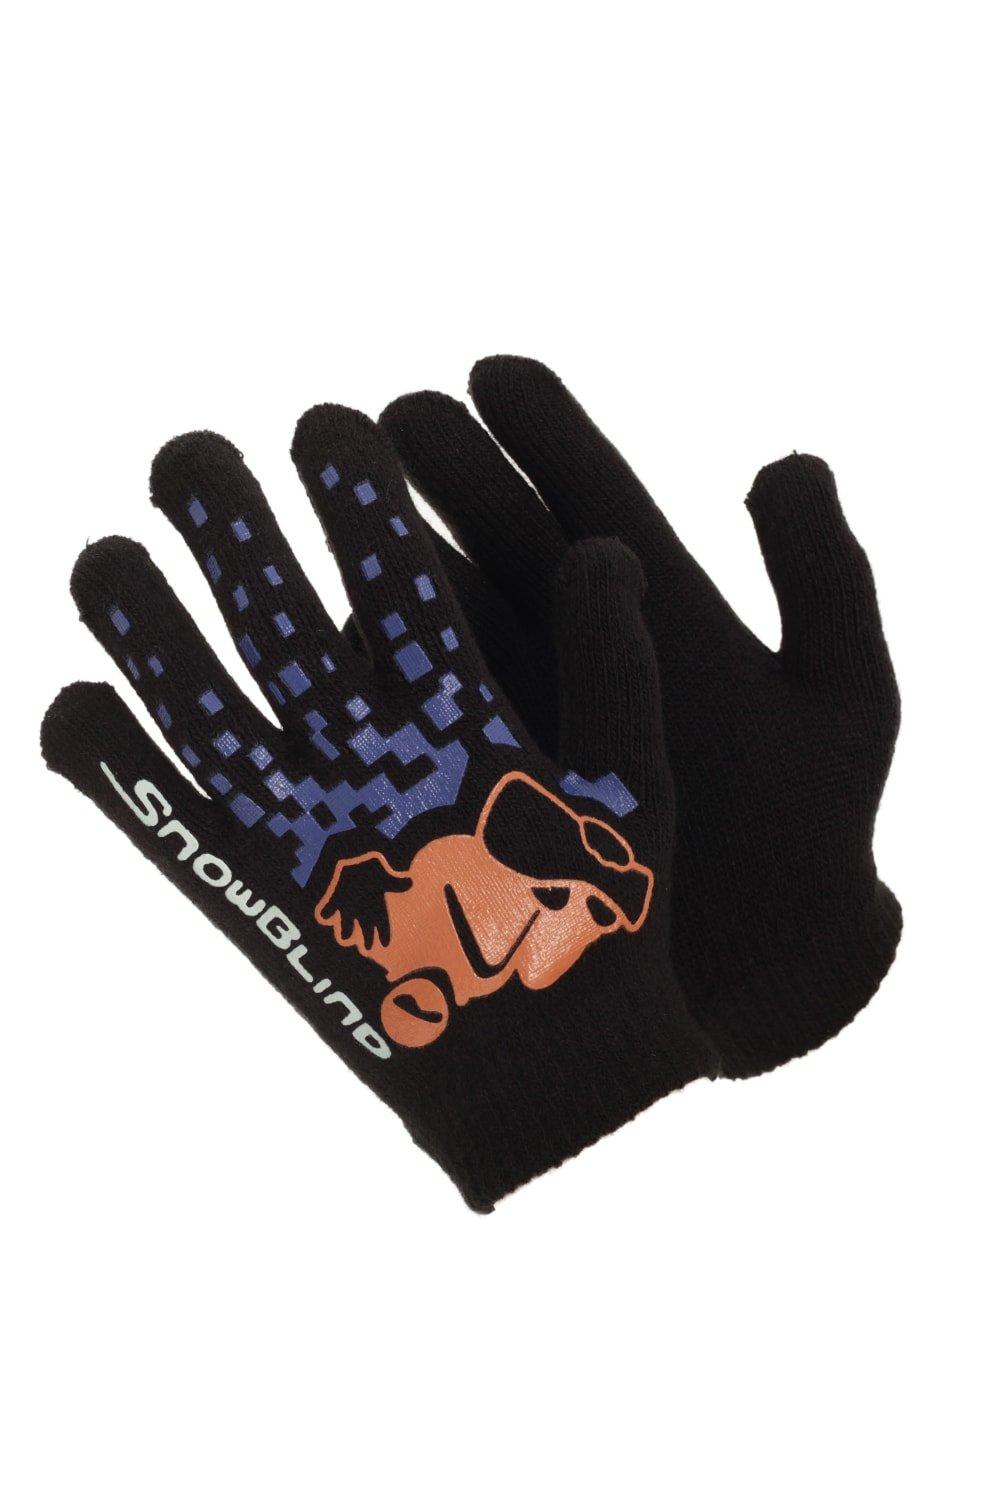 Черные зимние волшебные перчатки с резиновым принтом Universal Textiles, мультиколор распродажа термовязаные зимние перчатки universal textiles черный